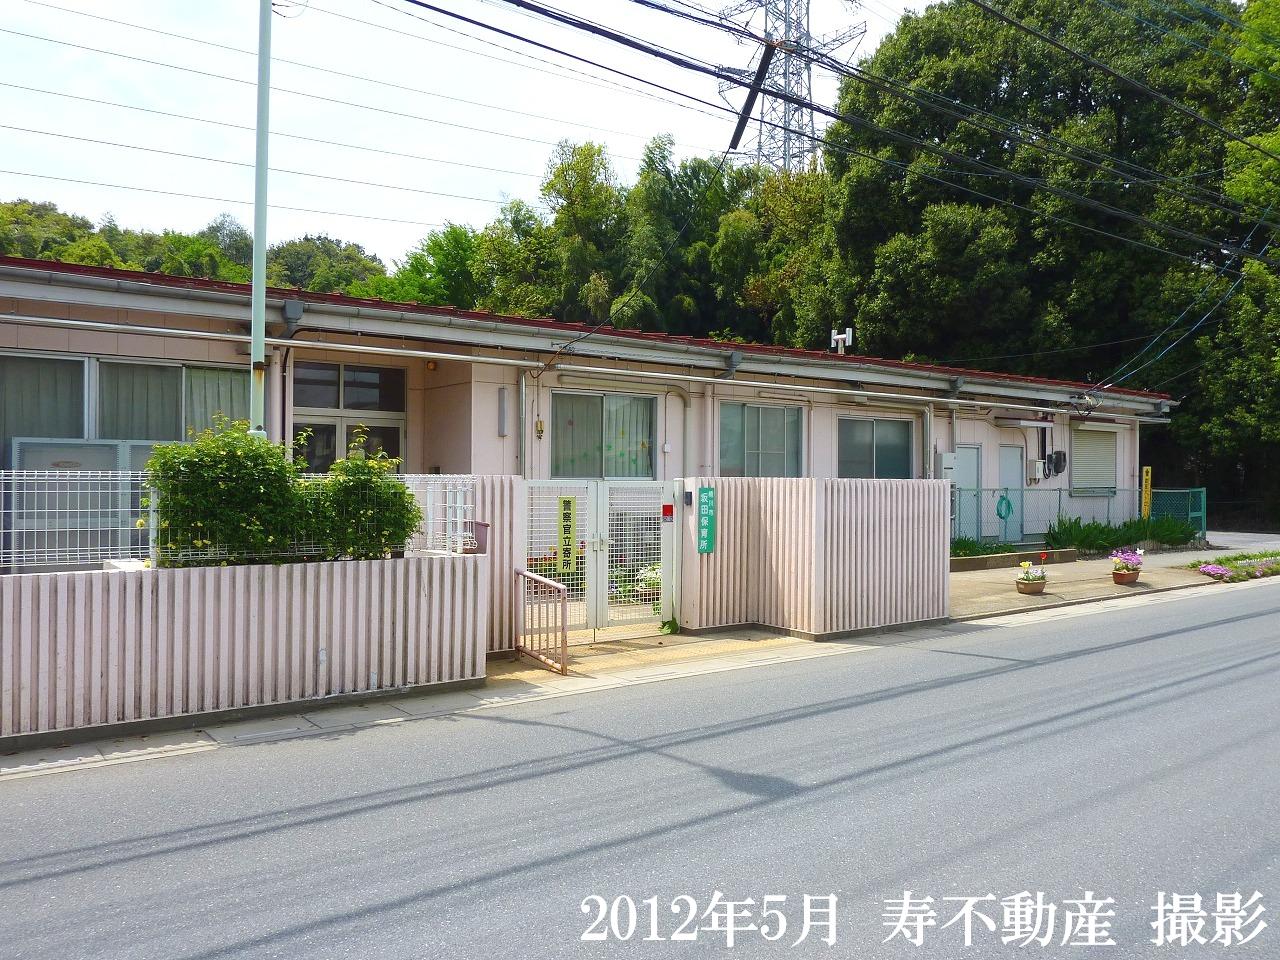 kindergarten ・ Nursery. Okegawa Sakata nursery school (kindergarten ・ 528m to the nursery)